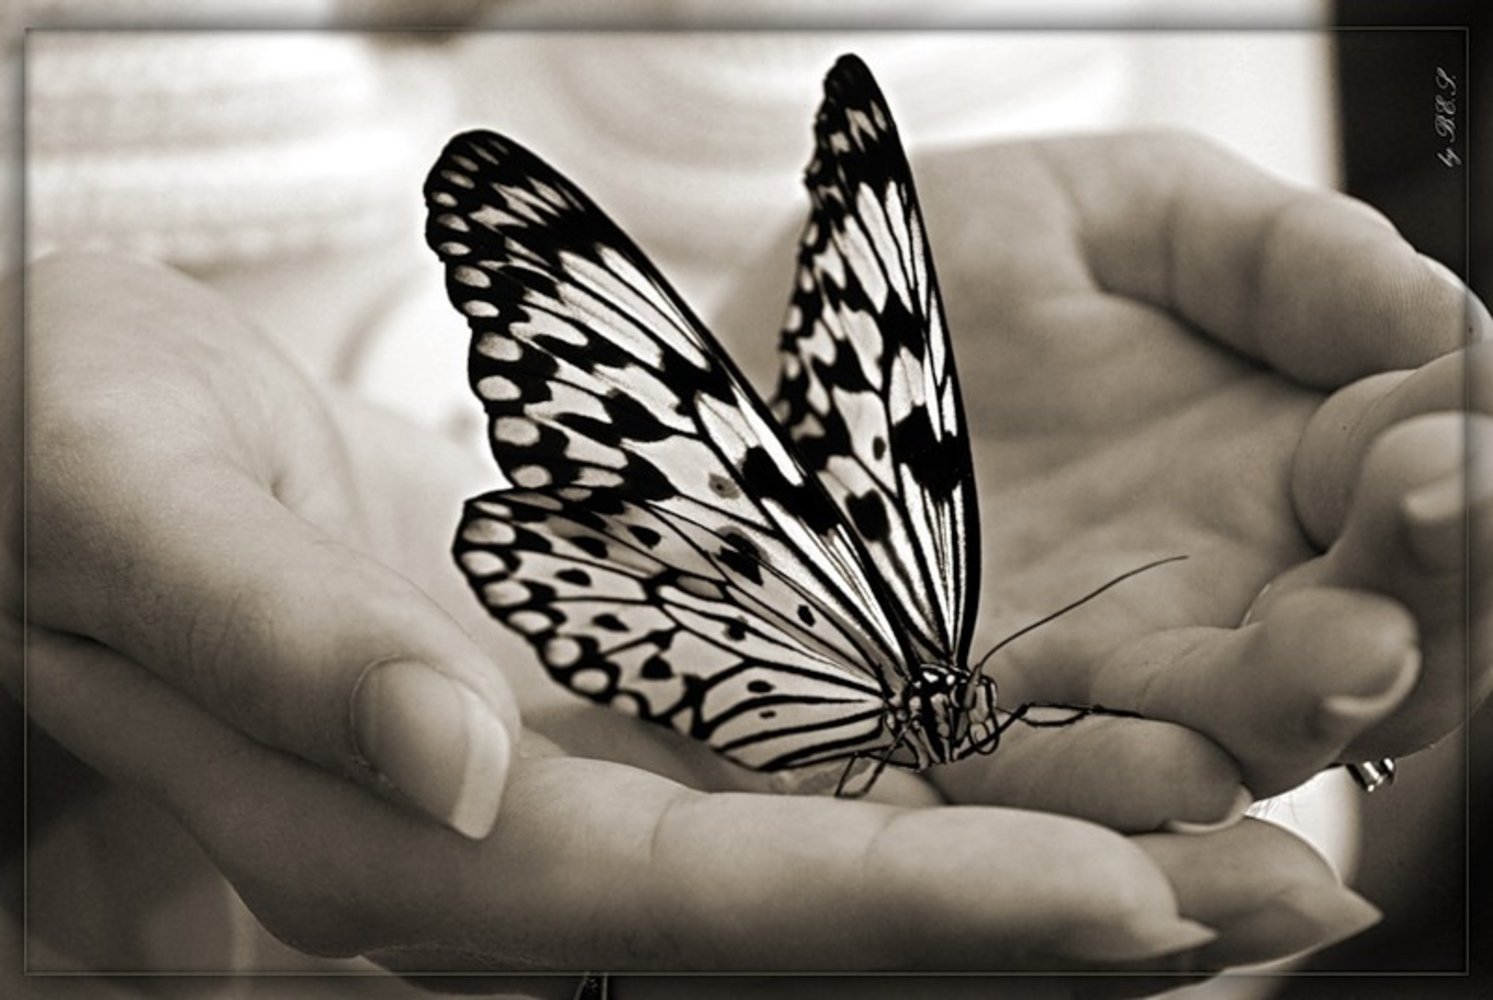 Бабочка На Руке